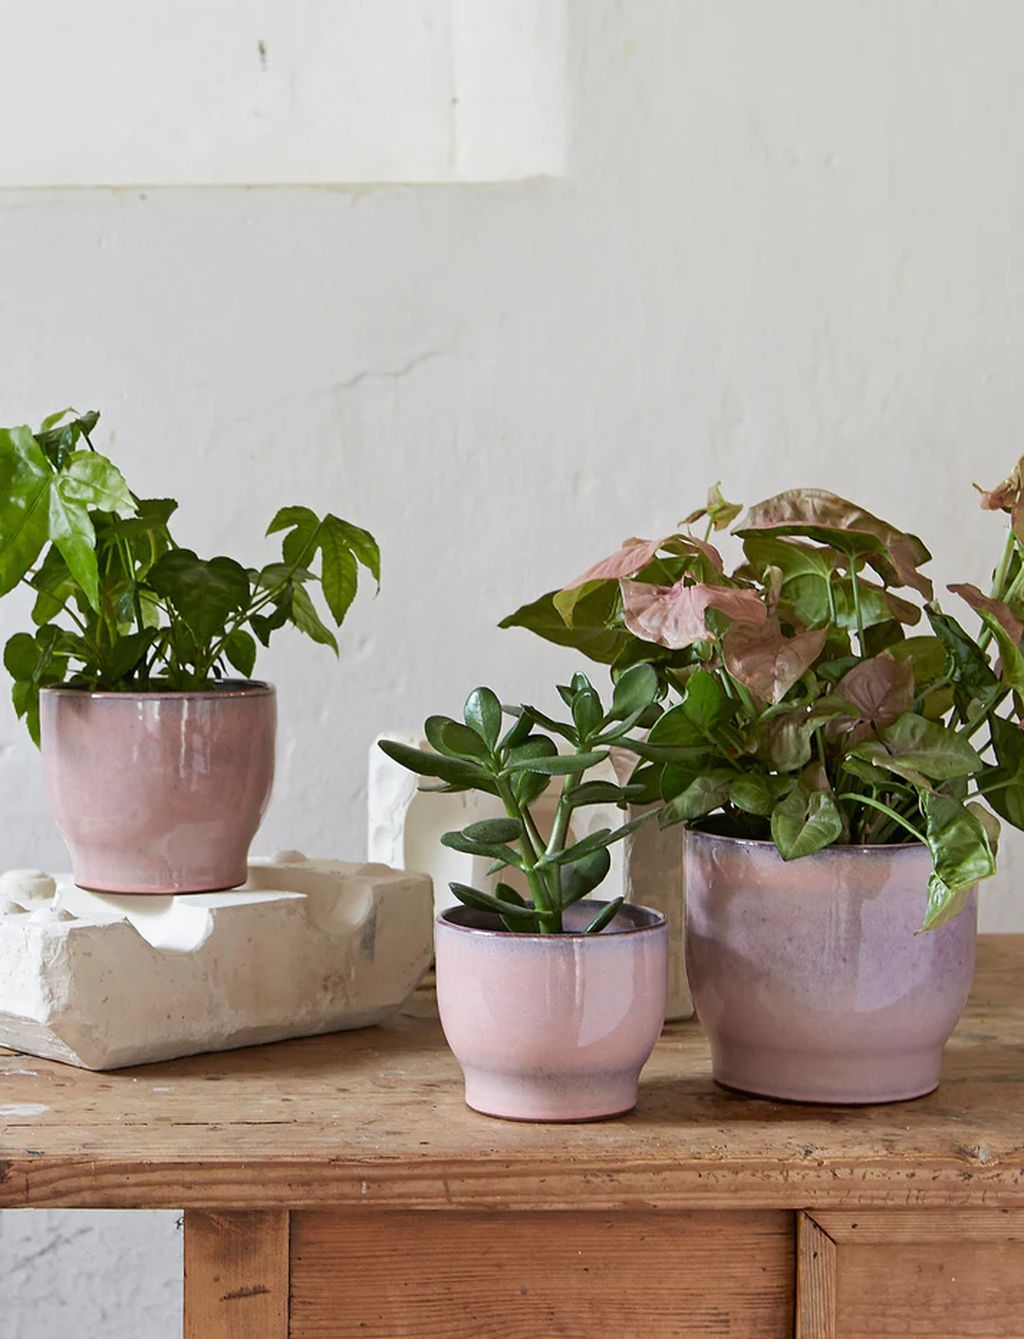 Knabstrup Keramik Örtpotten gömmer sig Ø 14,5 cm, rosa